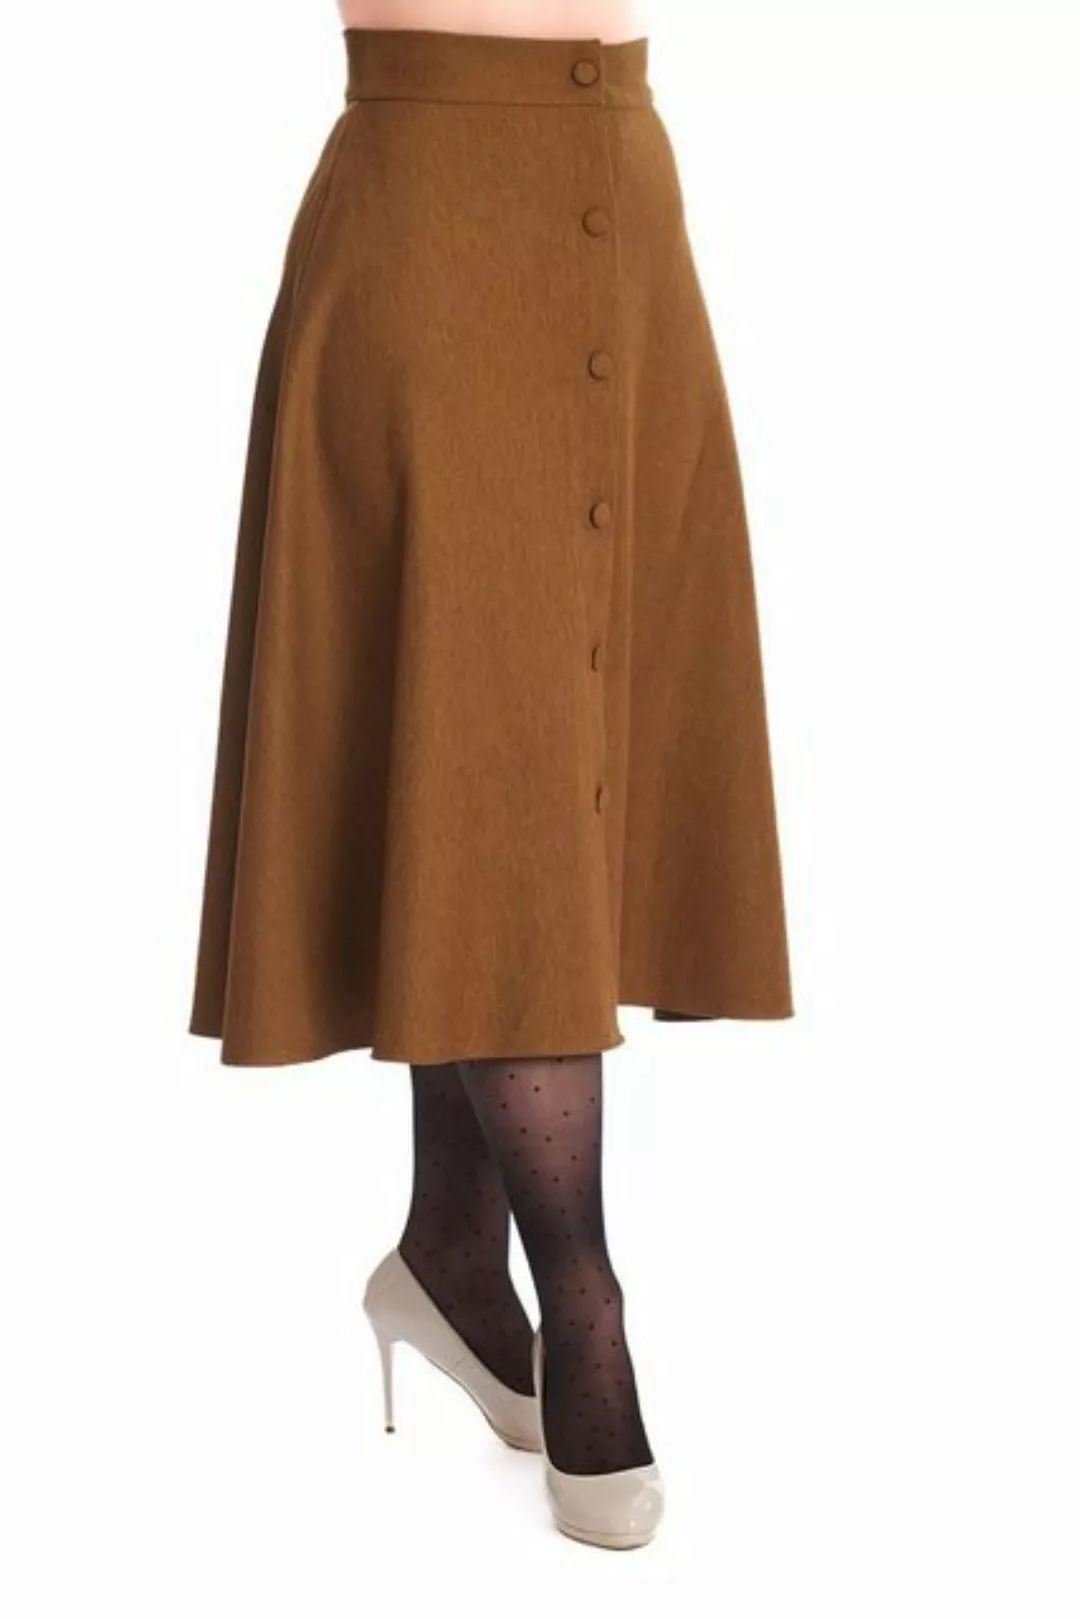 Banned A-Linien-Rock Book Worm Khaki Retro Vintage Swing Skirt günstig online kaufen